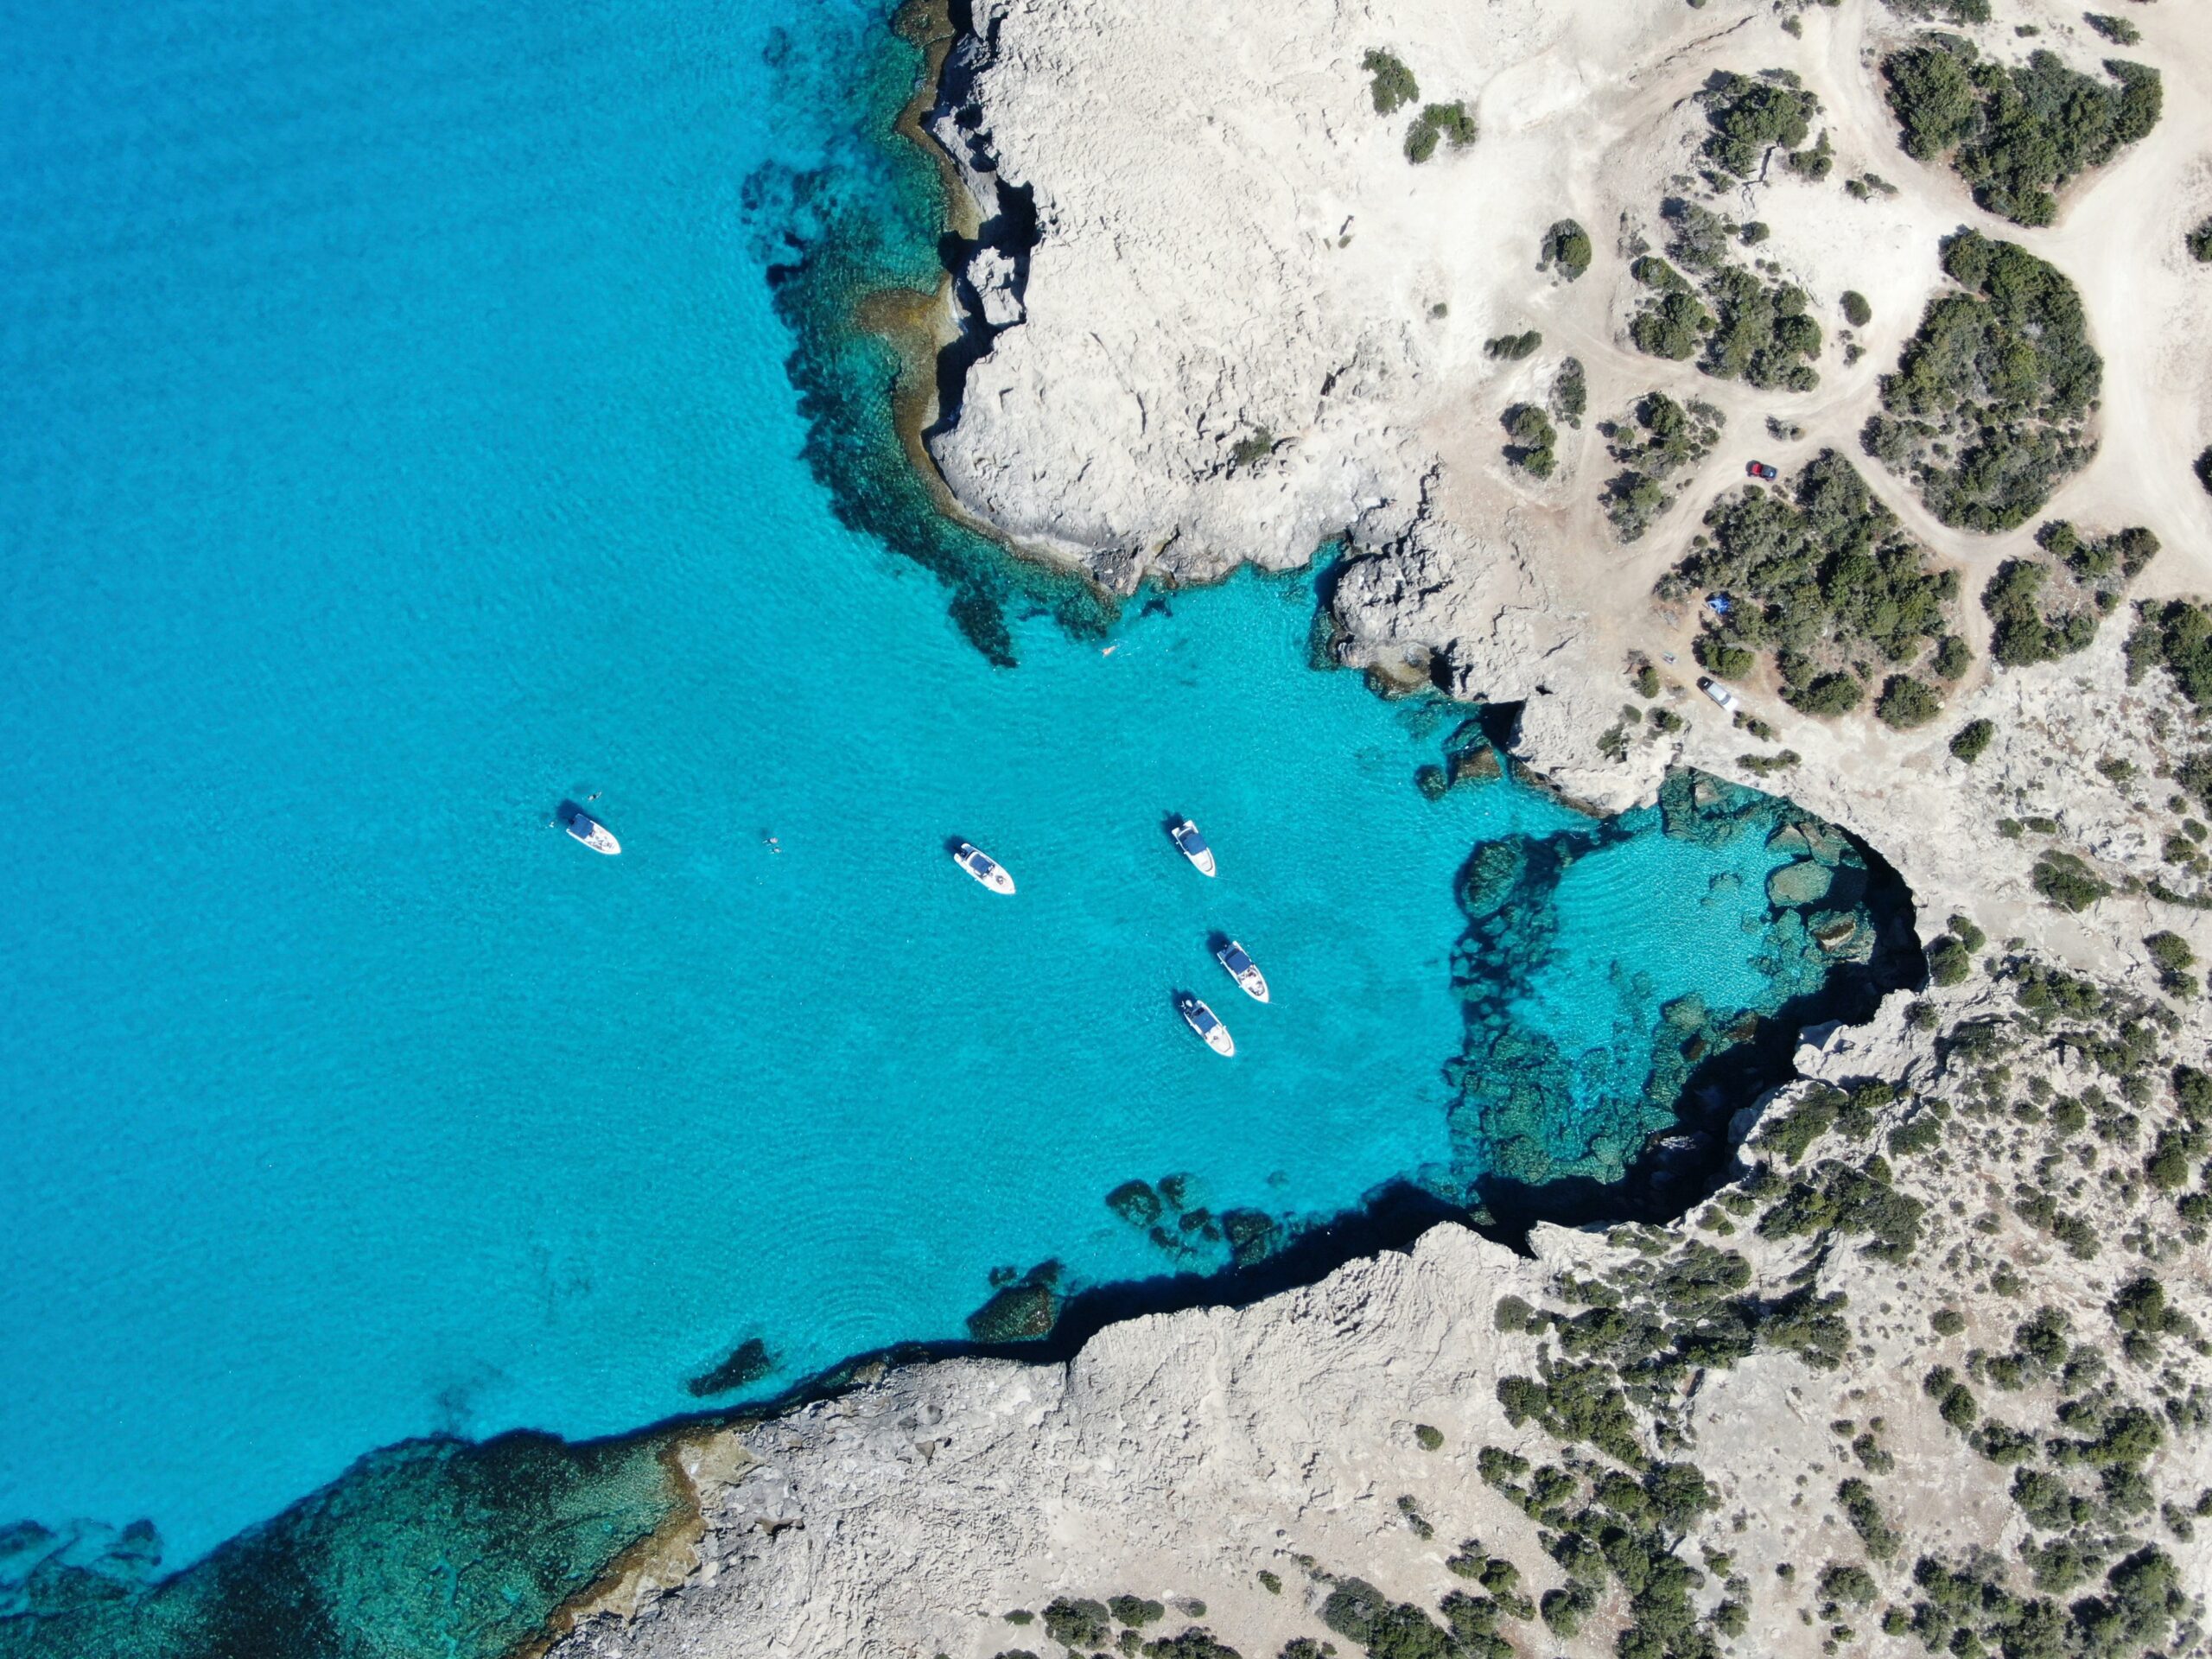 Zypern gehört zu den schönsten Reisezielen im August. Das blaue Mittelmeer steht hier im Kontrast zu den weißen Sandsteinen der Küstenlandschaft.